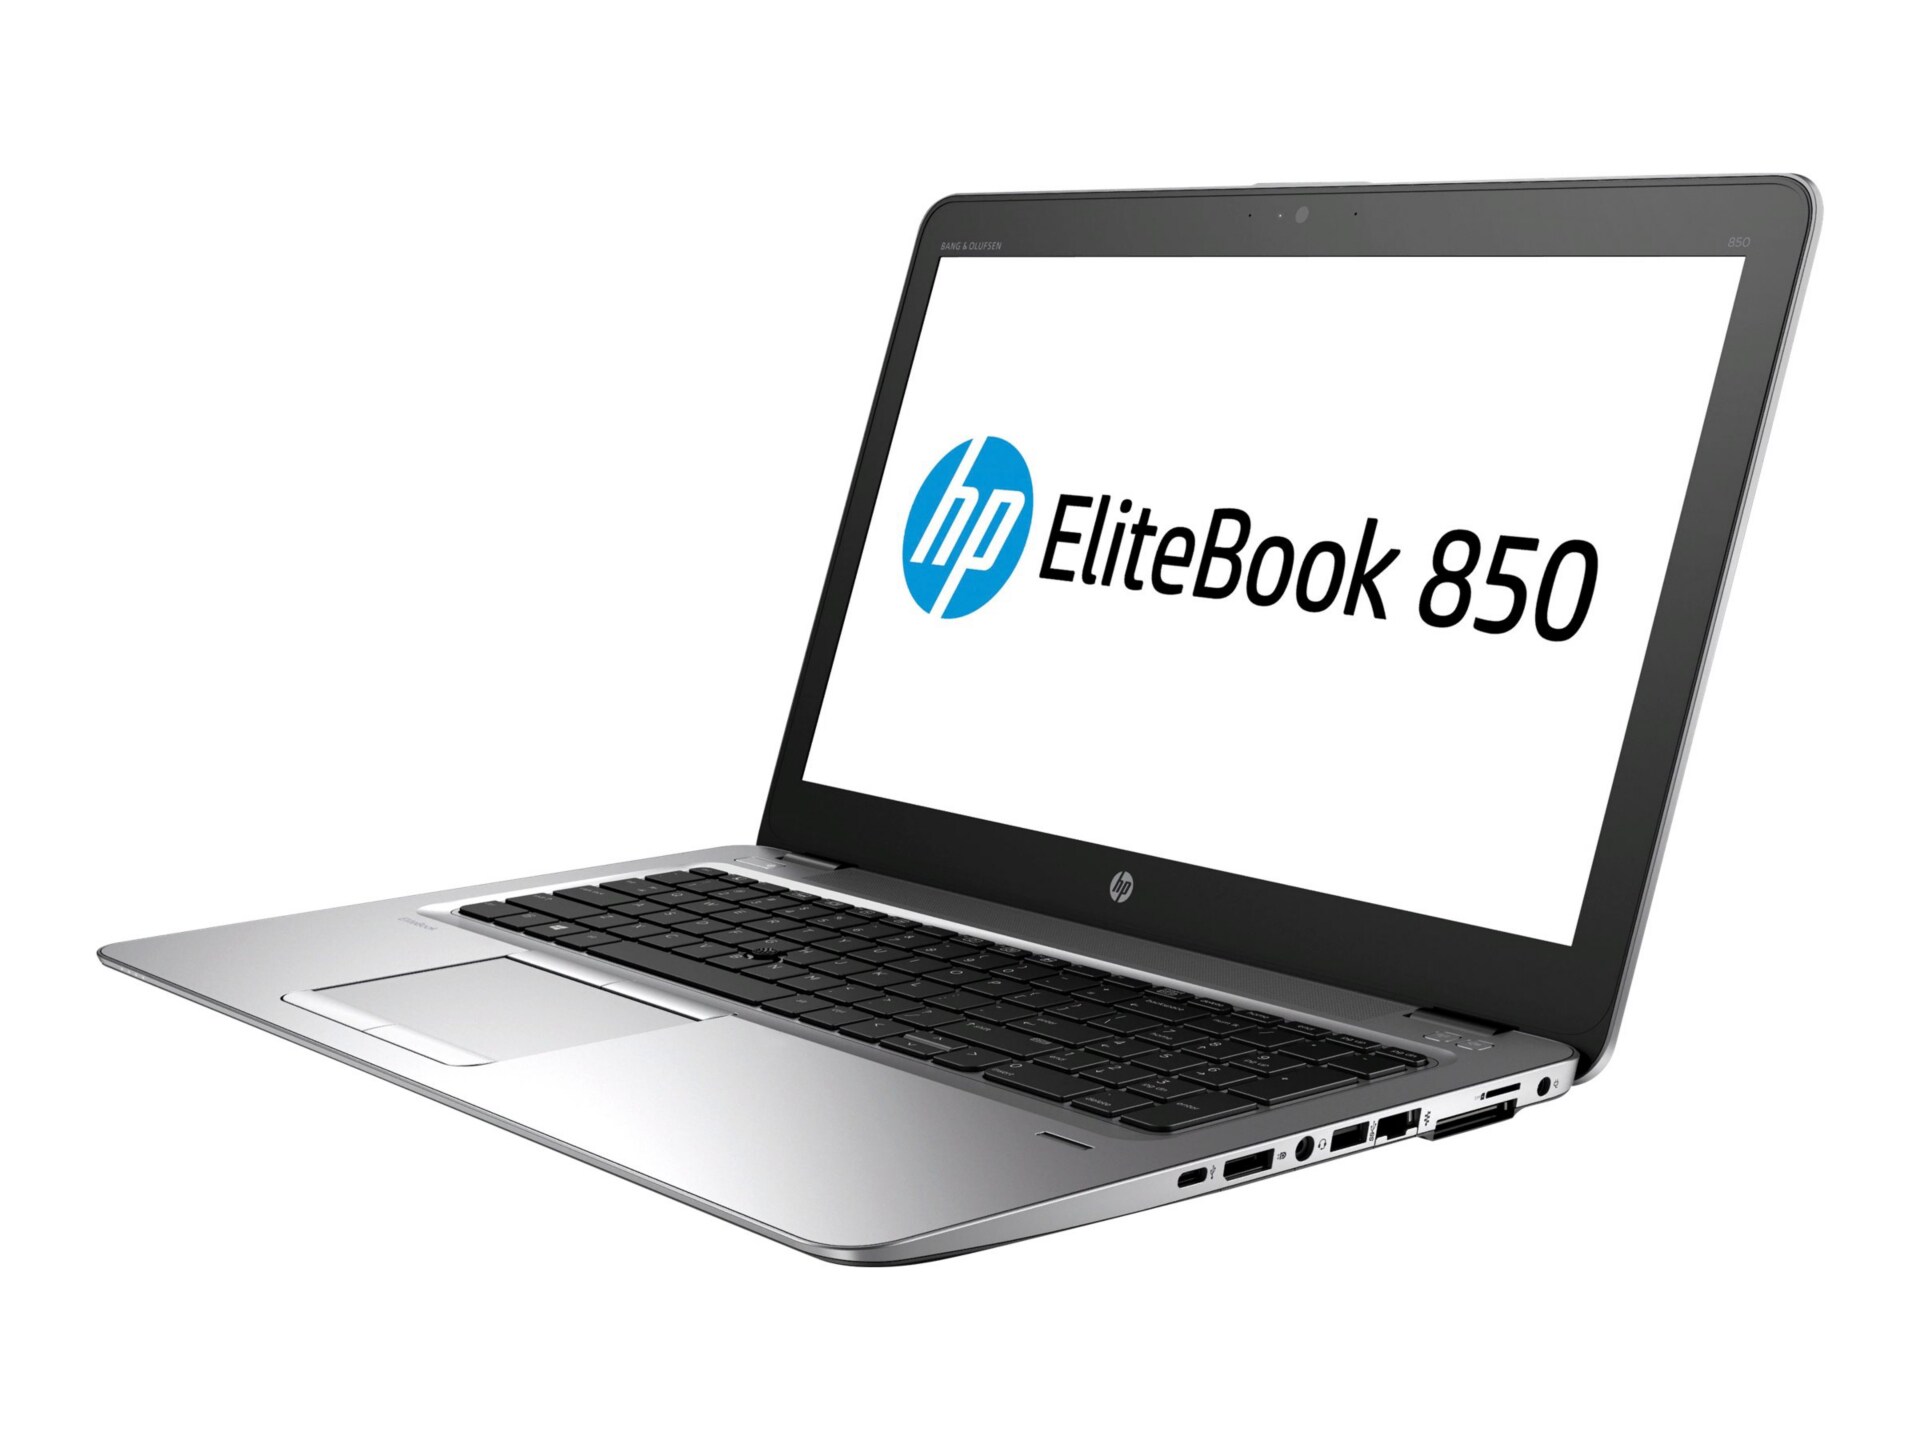 HP EliteBook 850 G3 - 15.6" - Core i5 6200U - 8 GB RAM - 128 GB SSD - US